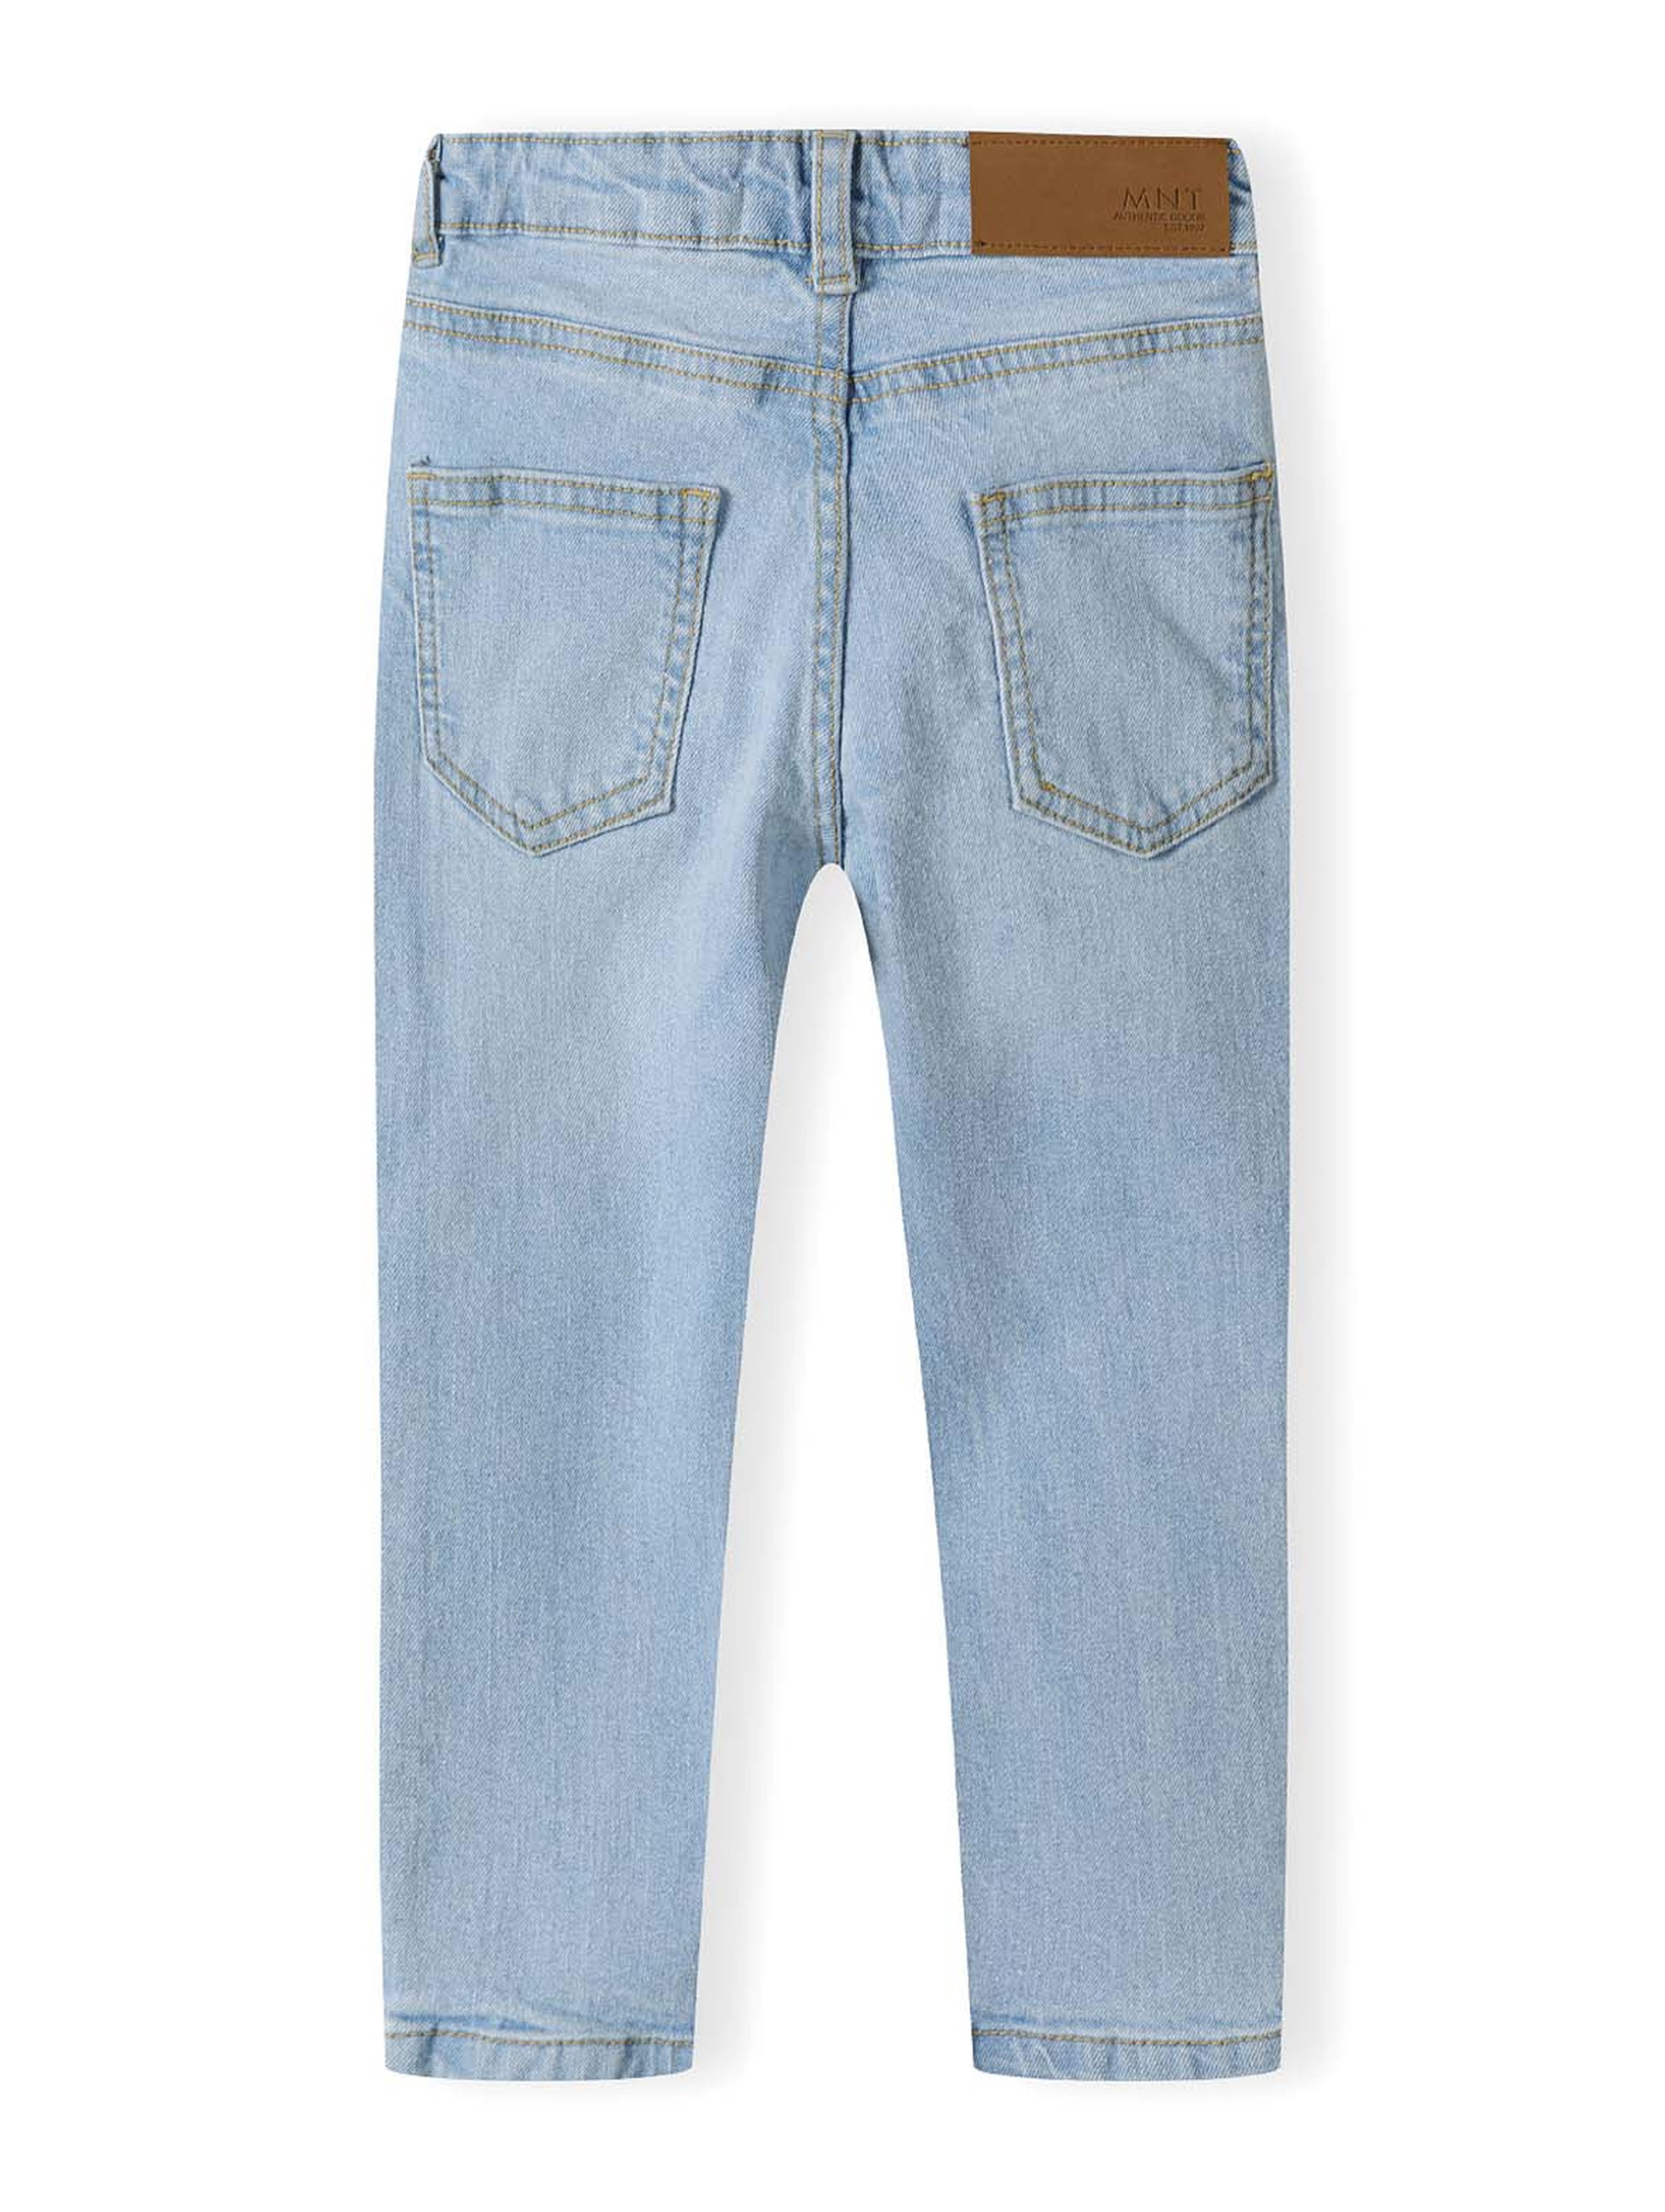 Klasyczne jasnoniebieskie spodnie jeansowe dla chłopca